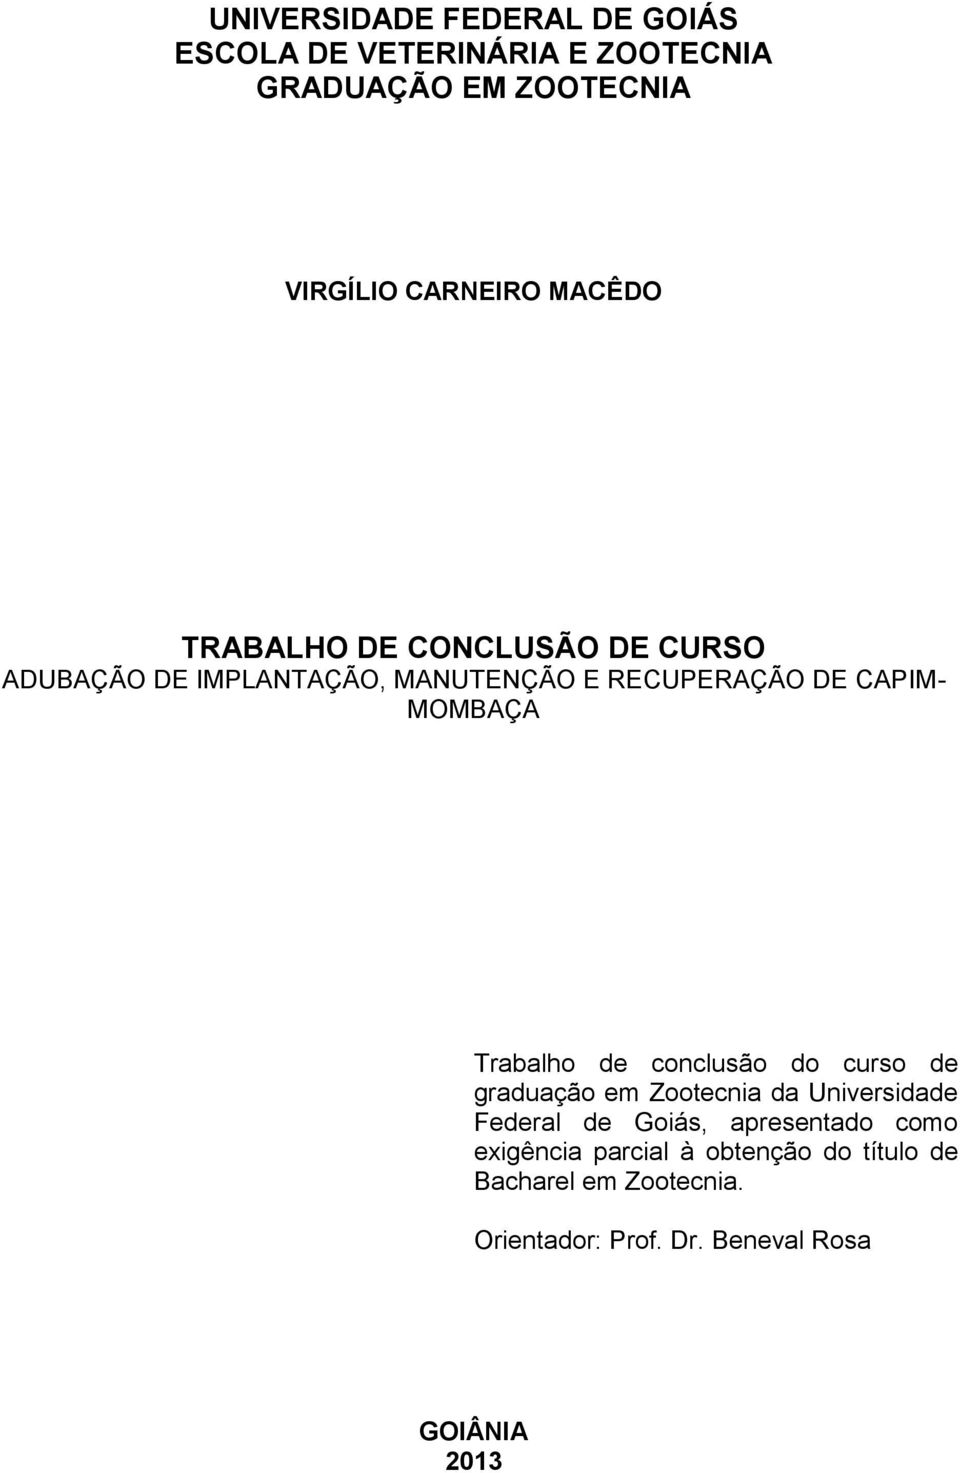 Trabalho de conclusão do curso de graduação em Zootecnia da Universidade Federal de Goiás, apresentado como